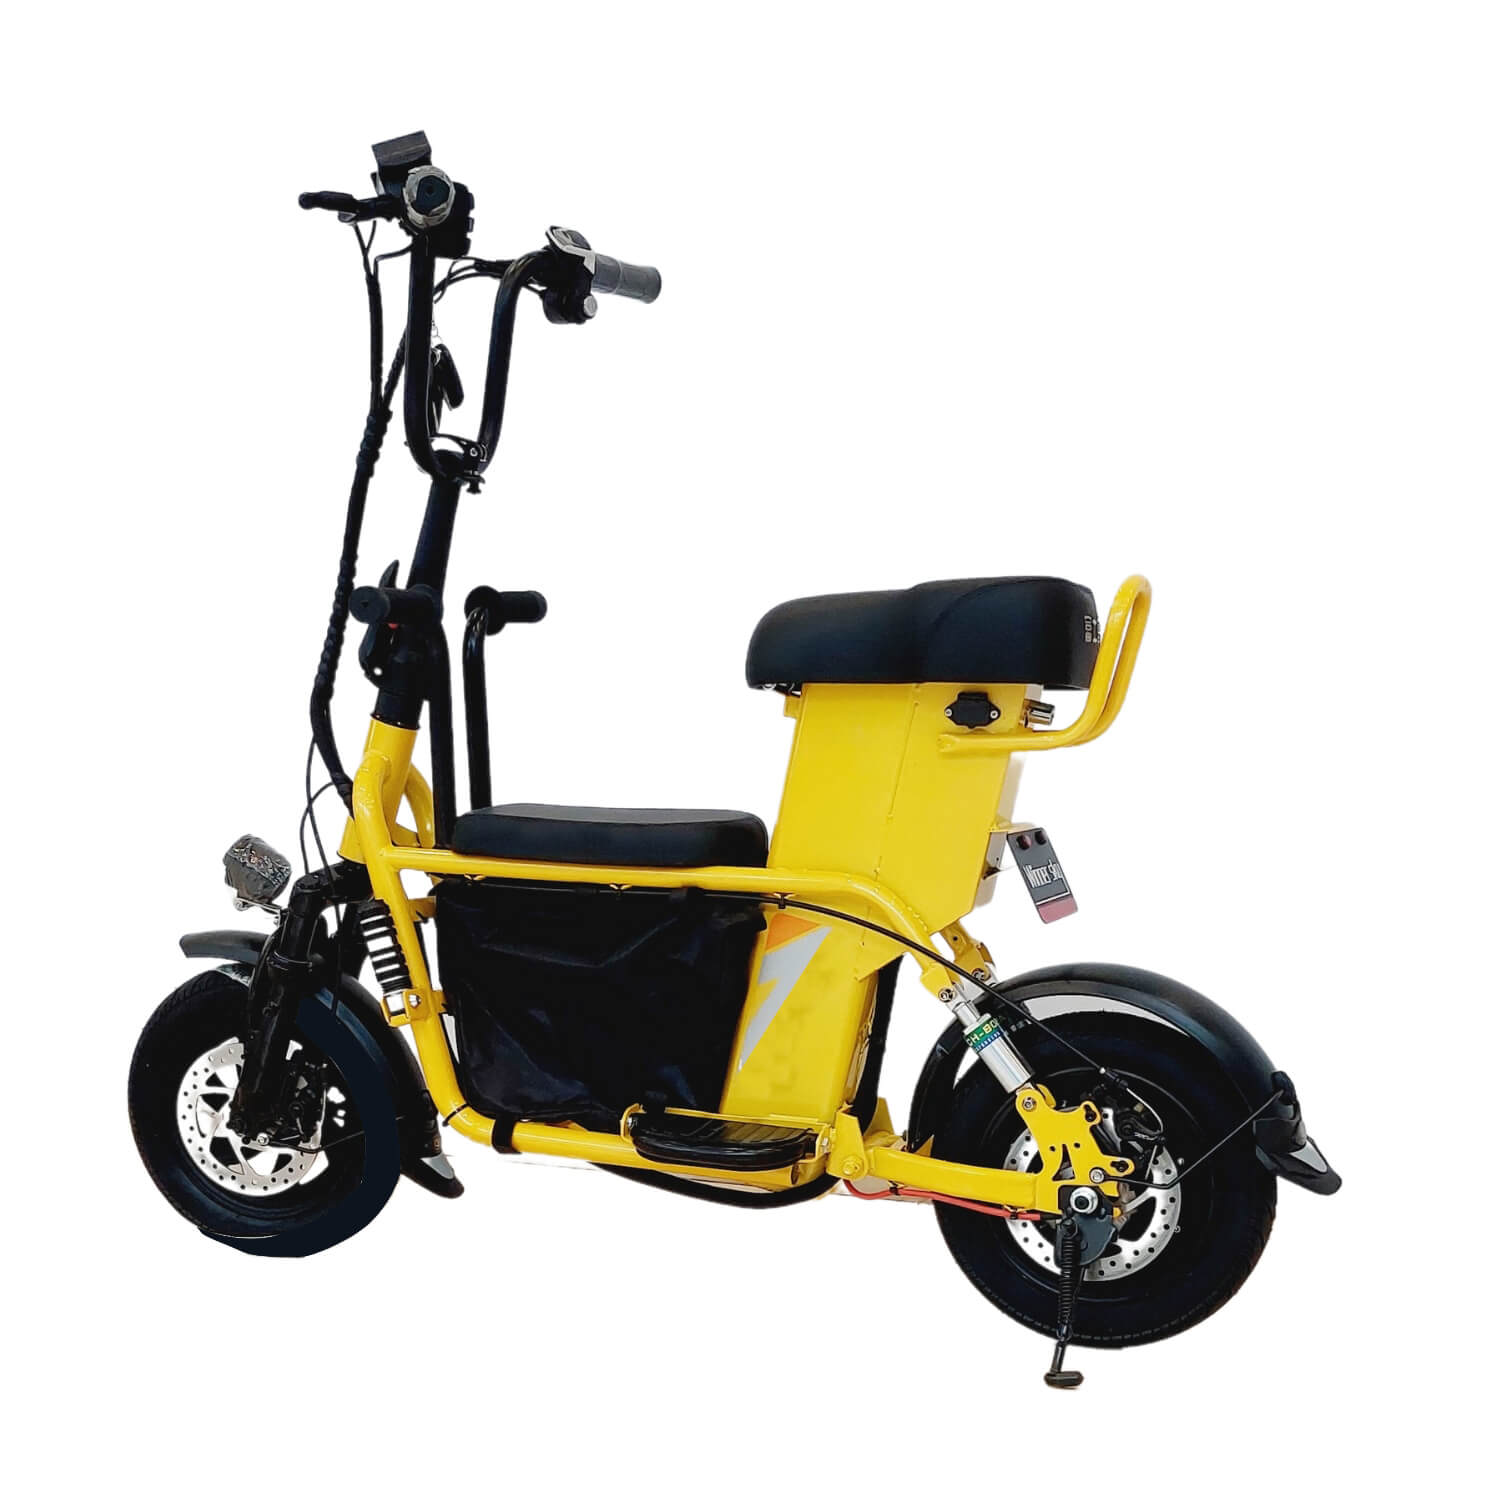 Megawheels Scoobike 48 v Electric Bike - Yellow